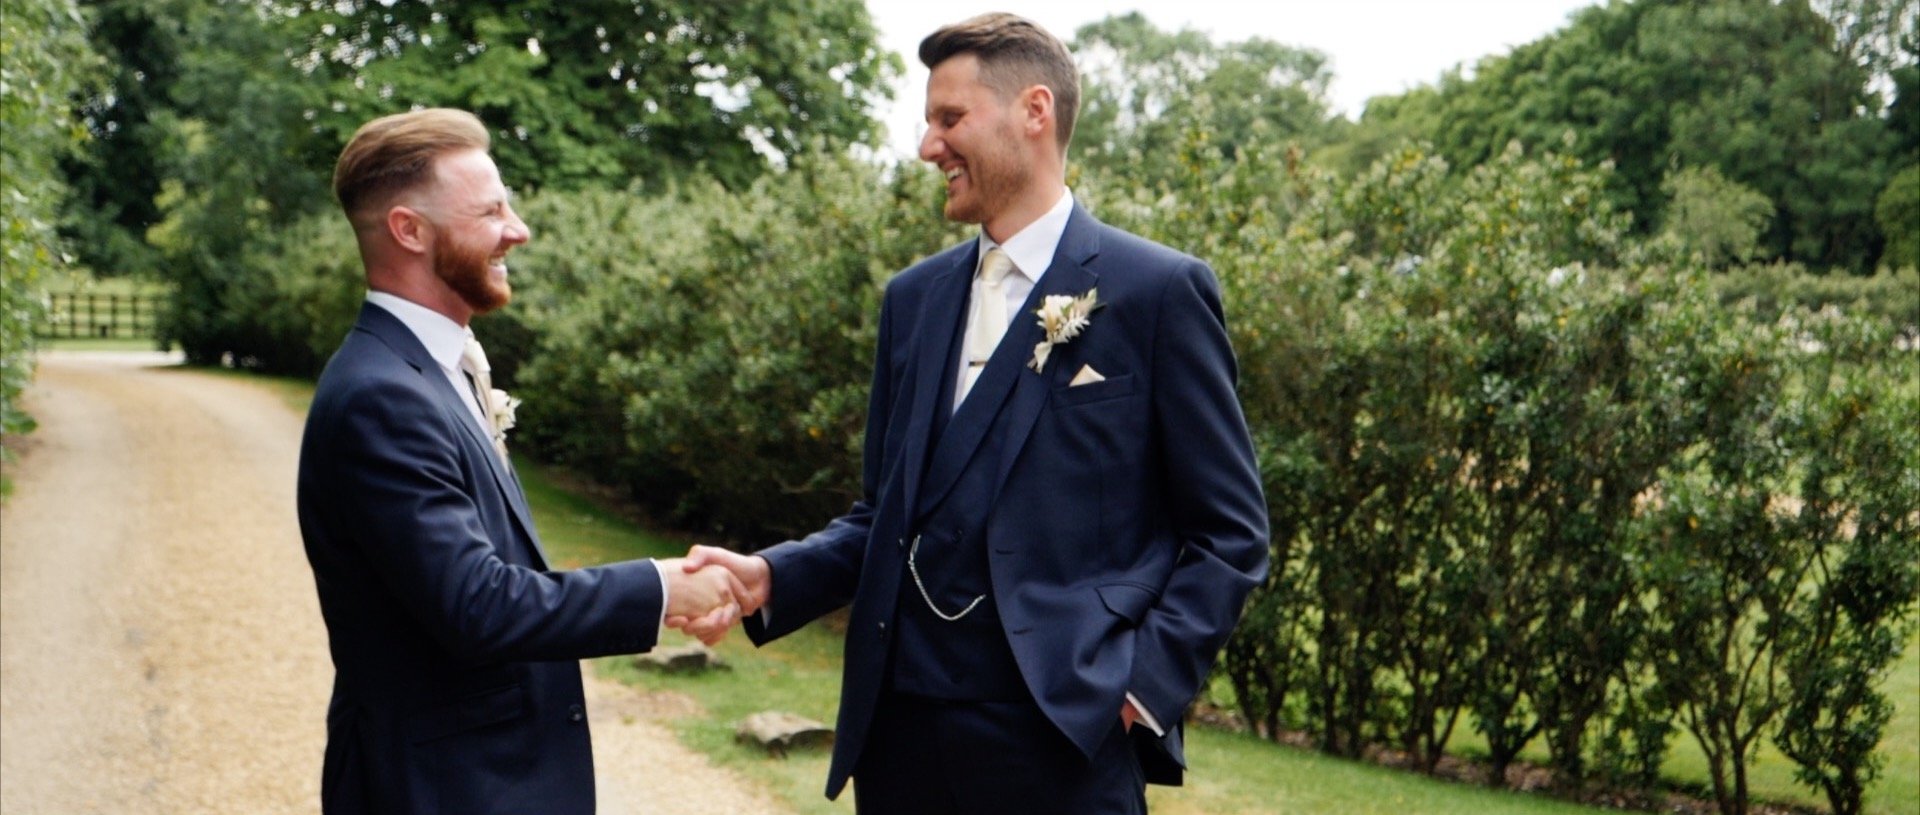 Groom and Best Man handshake wedding video Essex.jpg